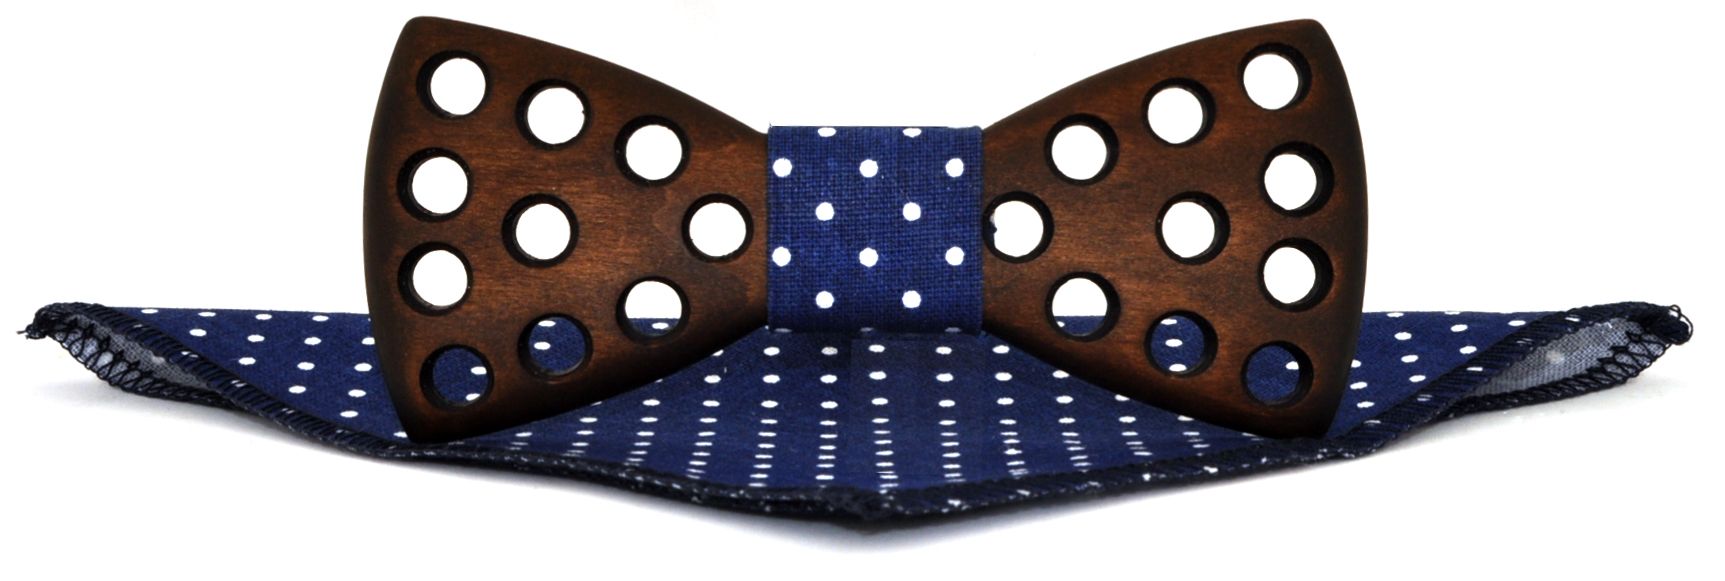 Деревянная галстук-бабочка с отверстиями с синим в горошек платком описание: Фасон - Классическая, Материал - Дерево, Цвет - Темно-коричневый, синий, Размер - 11,5 см. х 5 см., Страна производства - Россия.